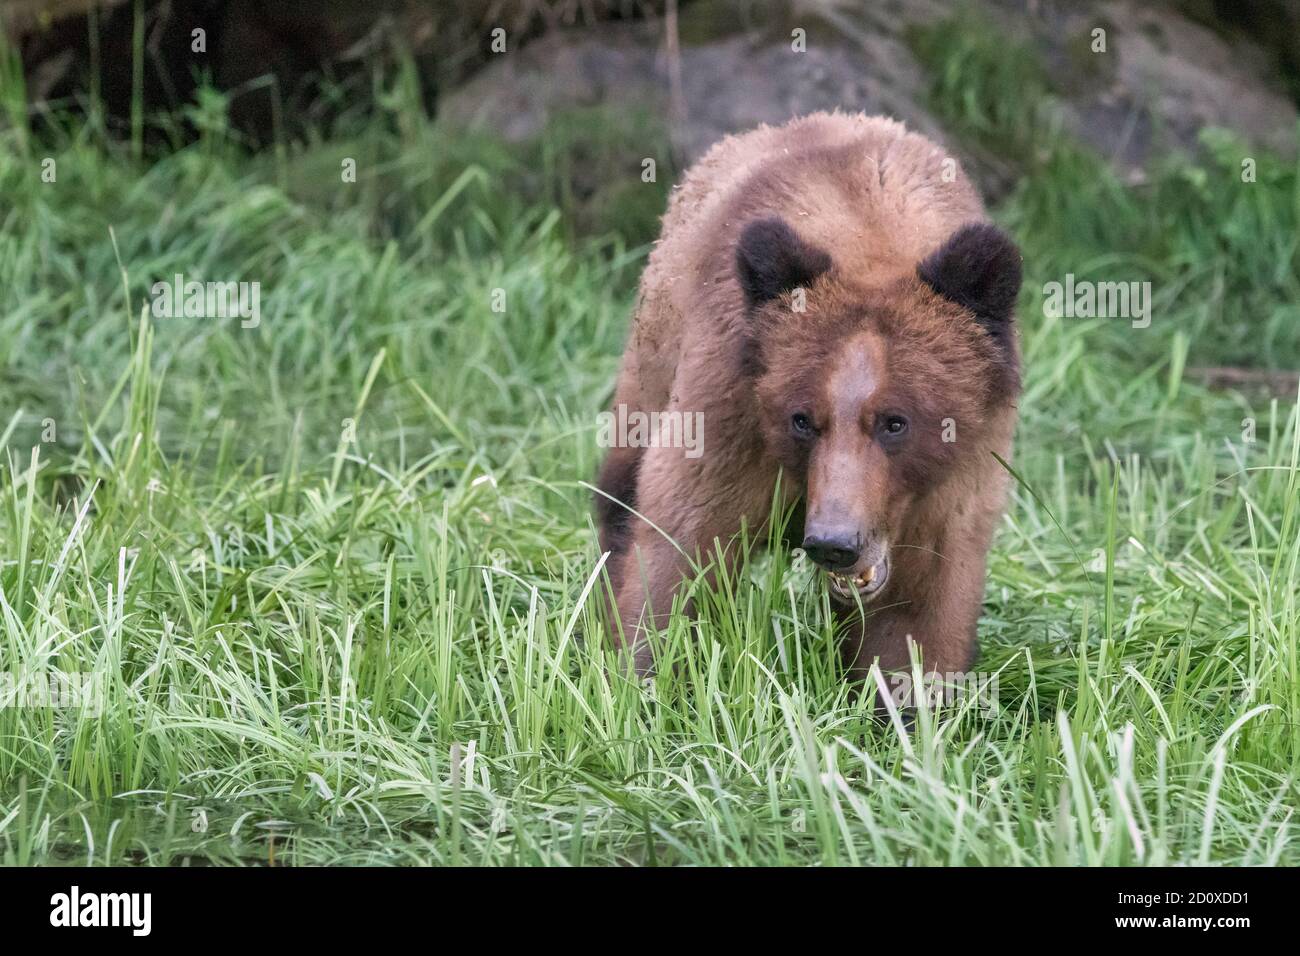 Adulto oso grizzly masticando en la hierba de la orilla, Khutzeymateen Inlet, BC Foto de stock